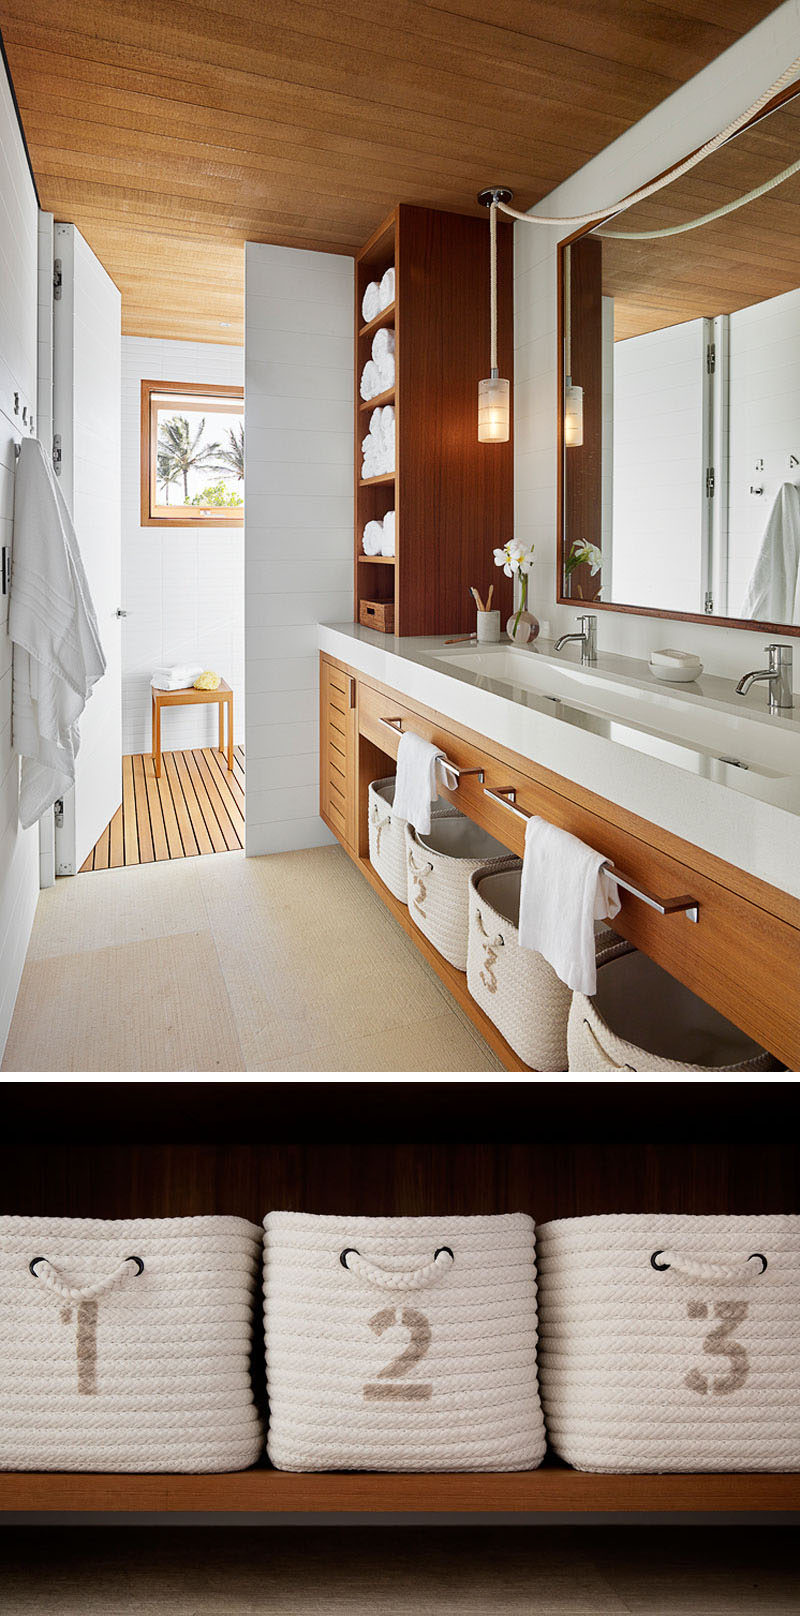 В этой современной ванной комнате пляжного домика белая столешница с длинной раковиной стоит на деревянном туалетном столике с открытыми стеллажами. # СовременныеВанная # Пляжный домик